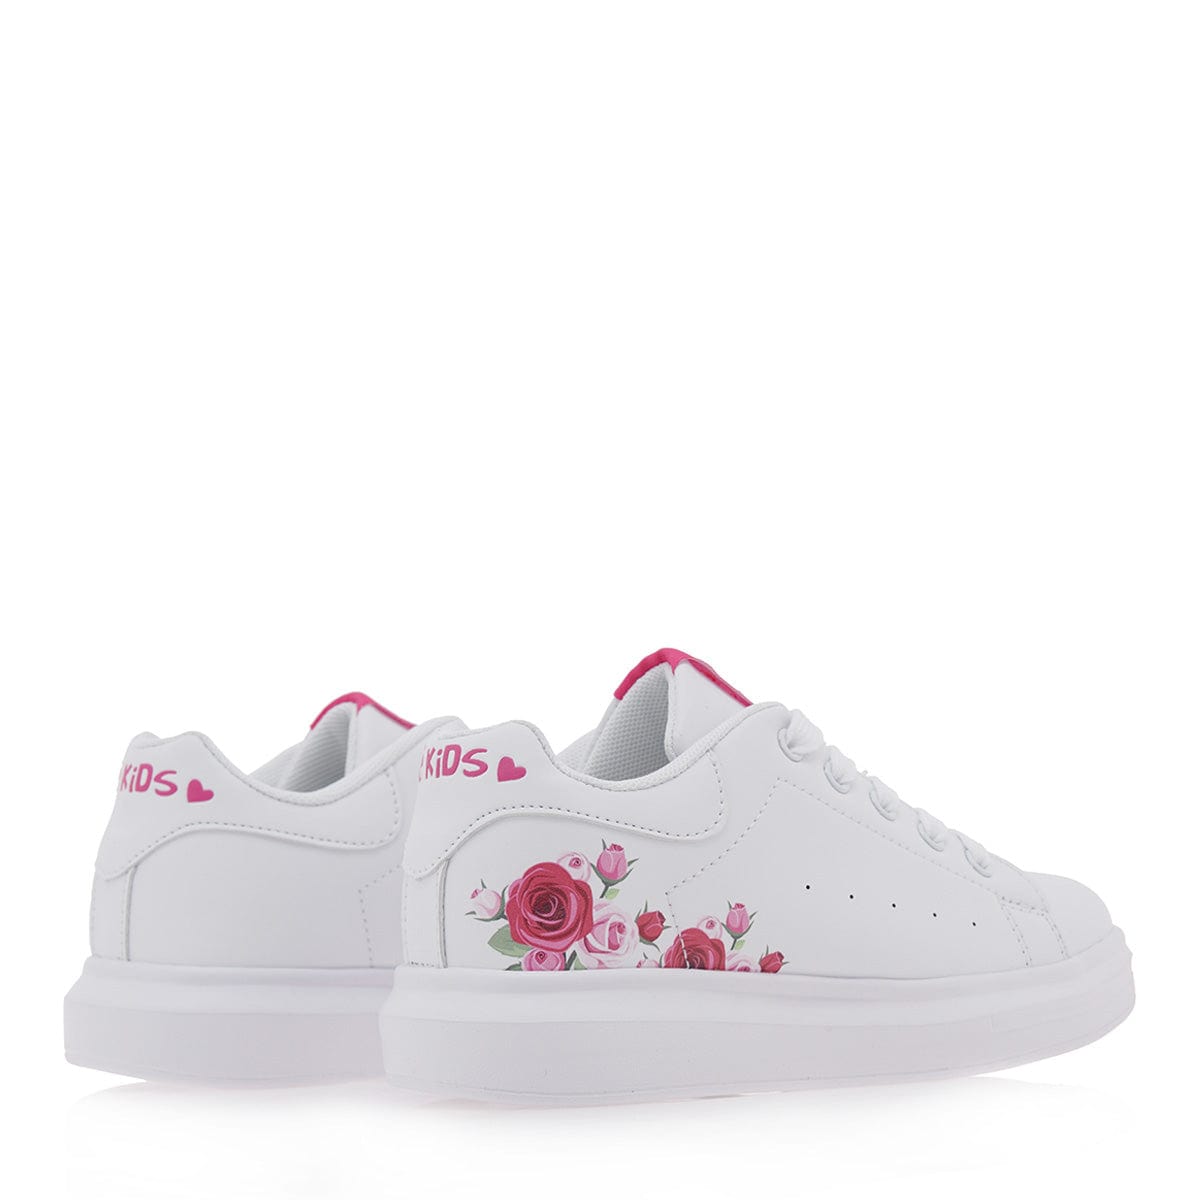 Exe kids sneakers λευκό λουλούδι φούξια/ κορδόνι  423-La Scarpa Shoes Exe kids sneakers λευκό λουλούδι φούξια/ κορδόνι  423 GIRLS EXE KIDS